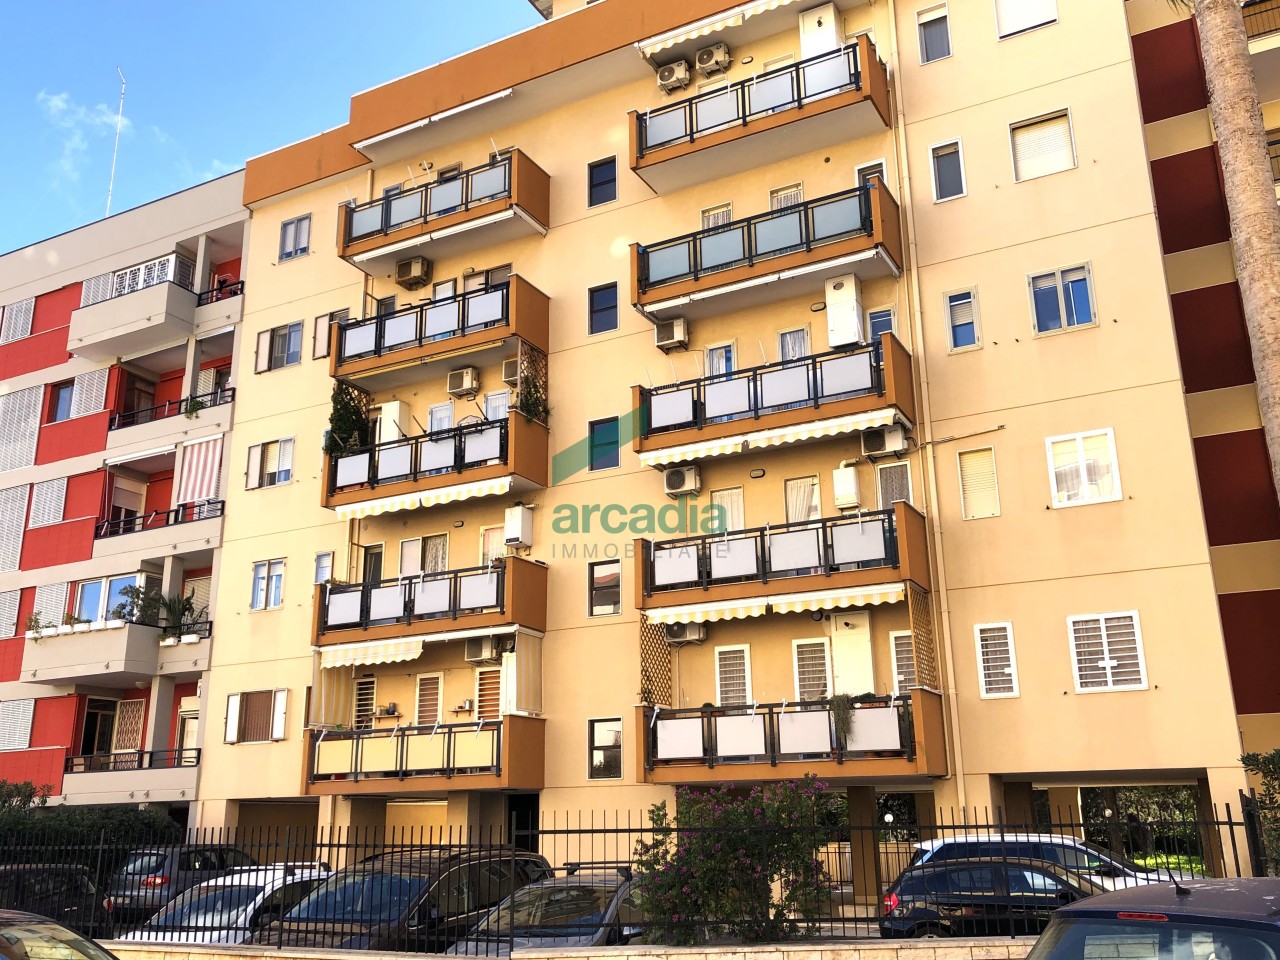 Appartamento in affitto a Bari, 5 locali, prezzo € 800 | PortaleAgenzieImmobiliari.it